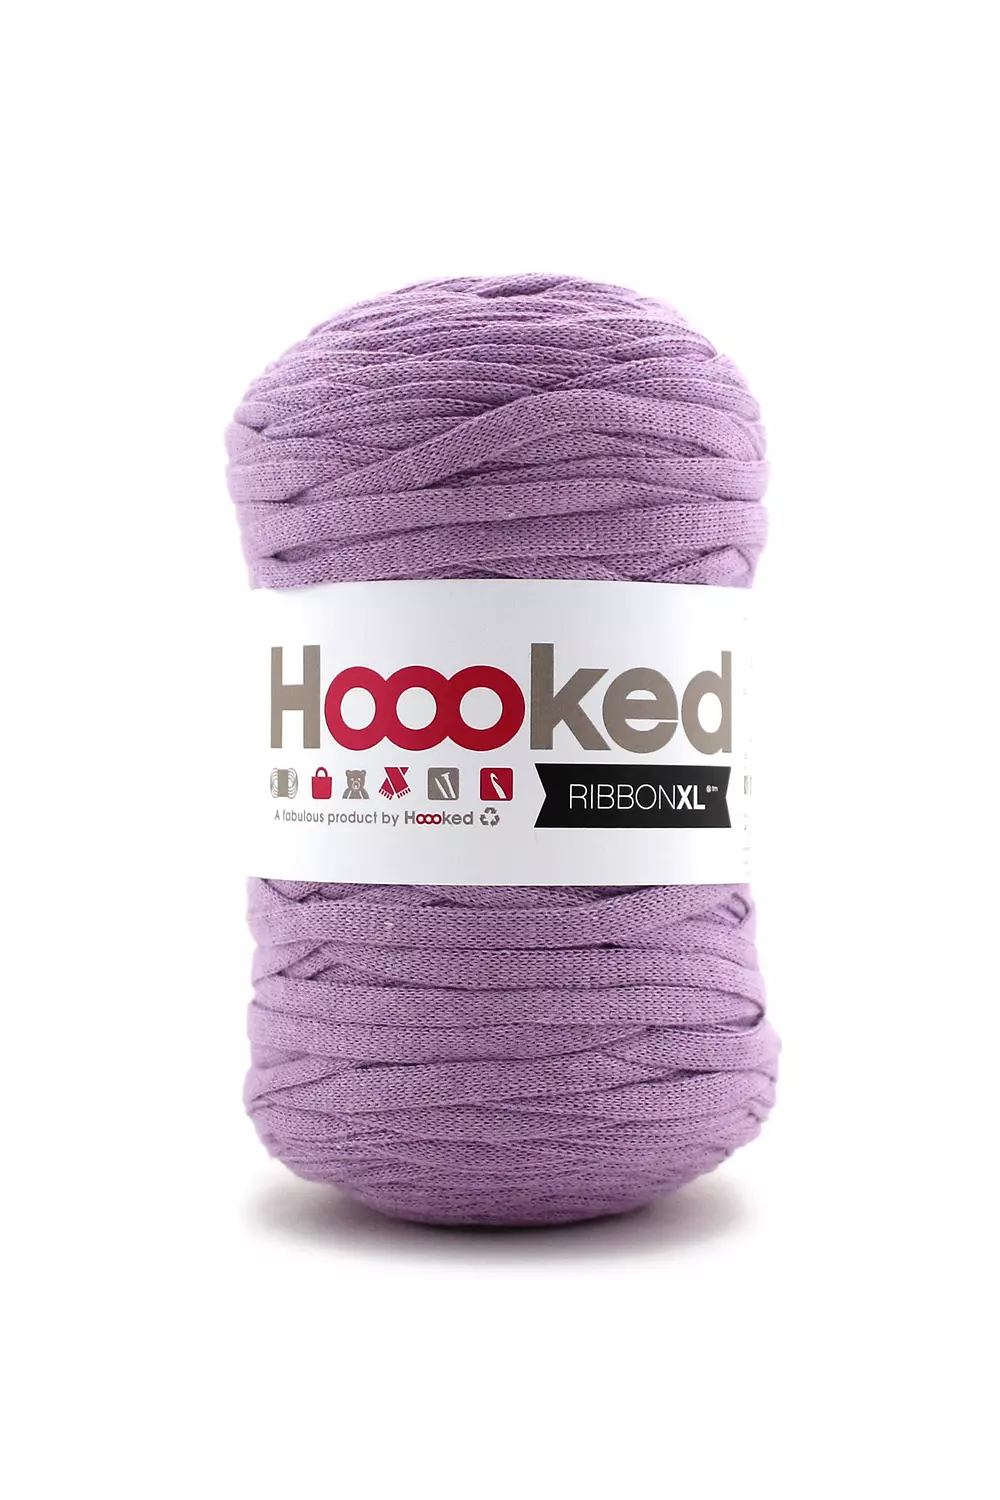 Hoooked Ribbon LUREX, fil à crocheter et à tricoter   DMC   DMC